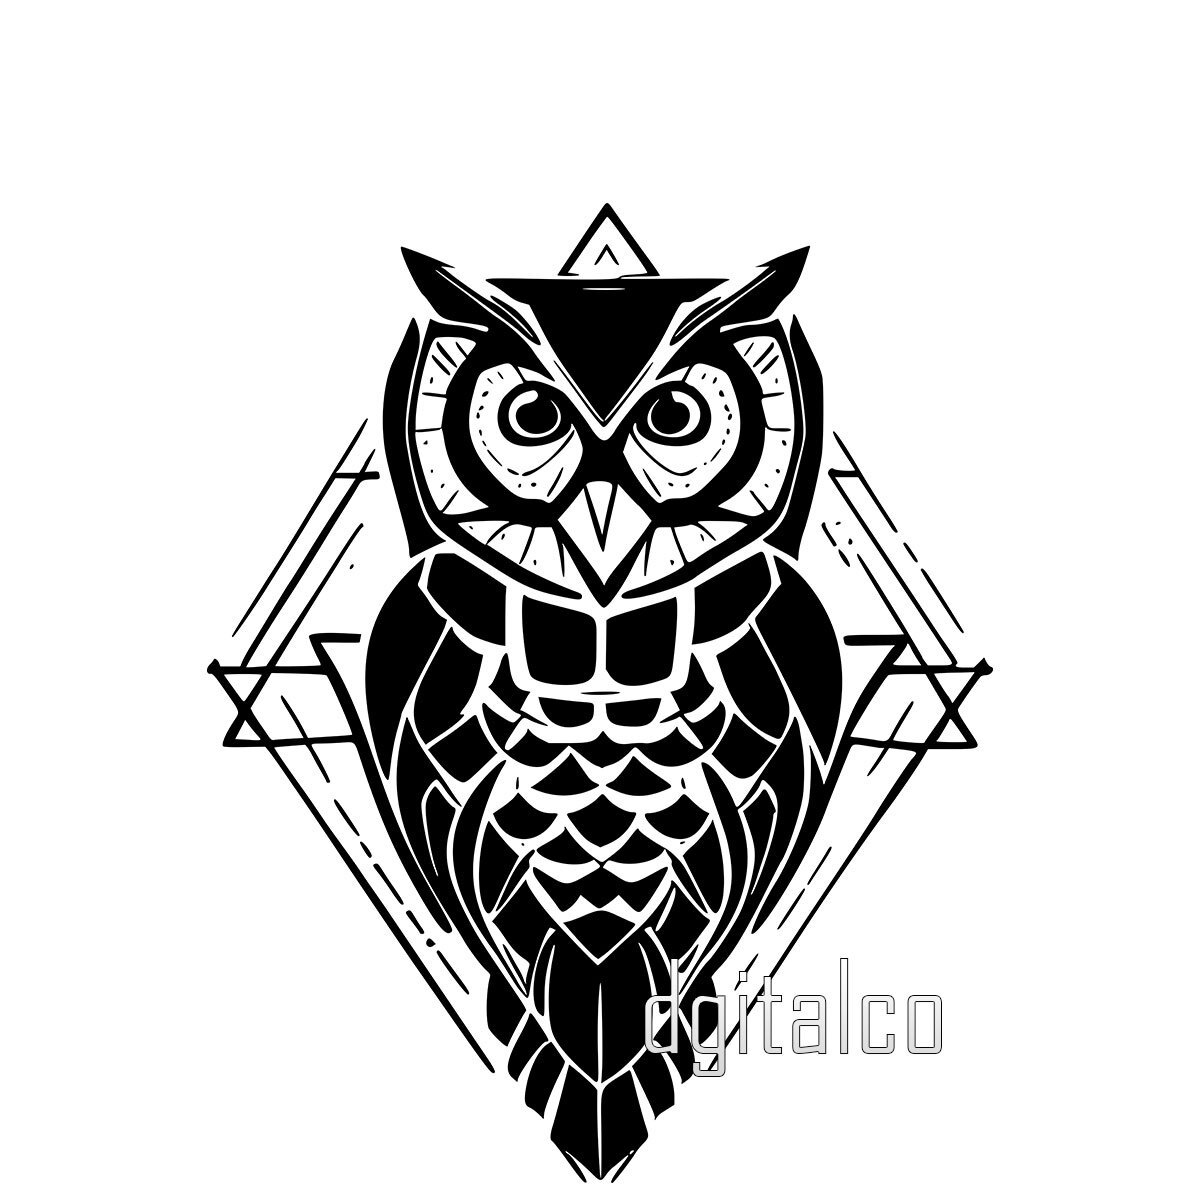 Artcastle Tattoo - Minimal : Geometric owl tattoo, lower arm | Facebook